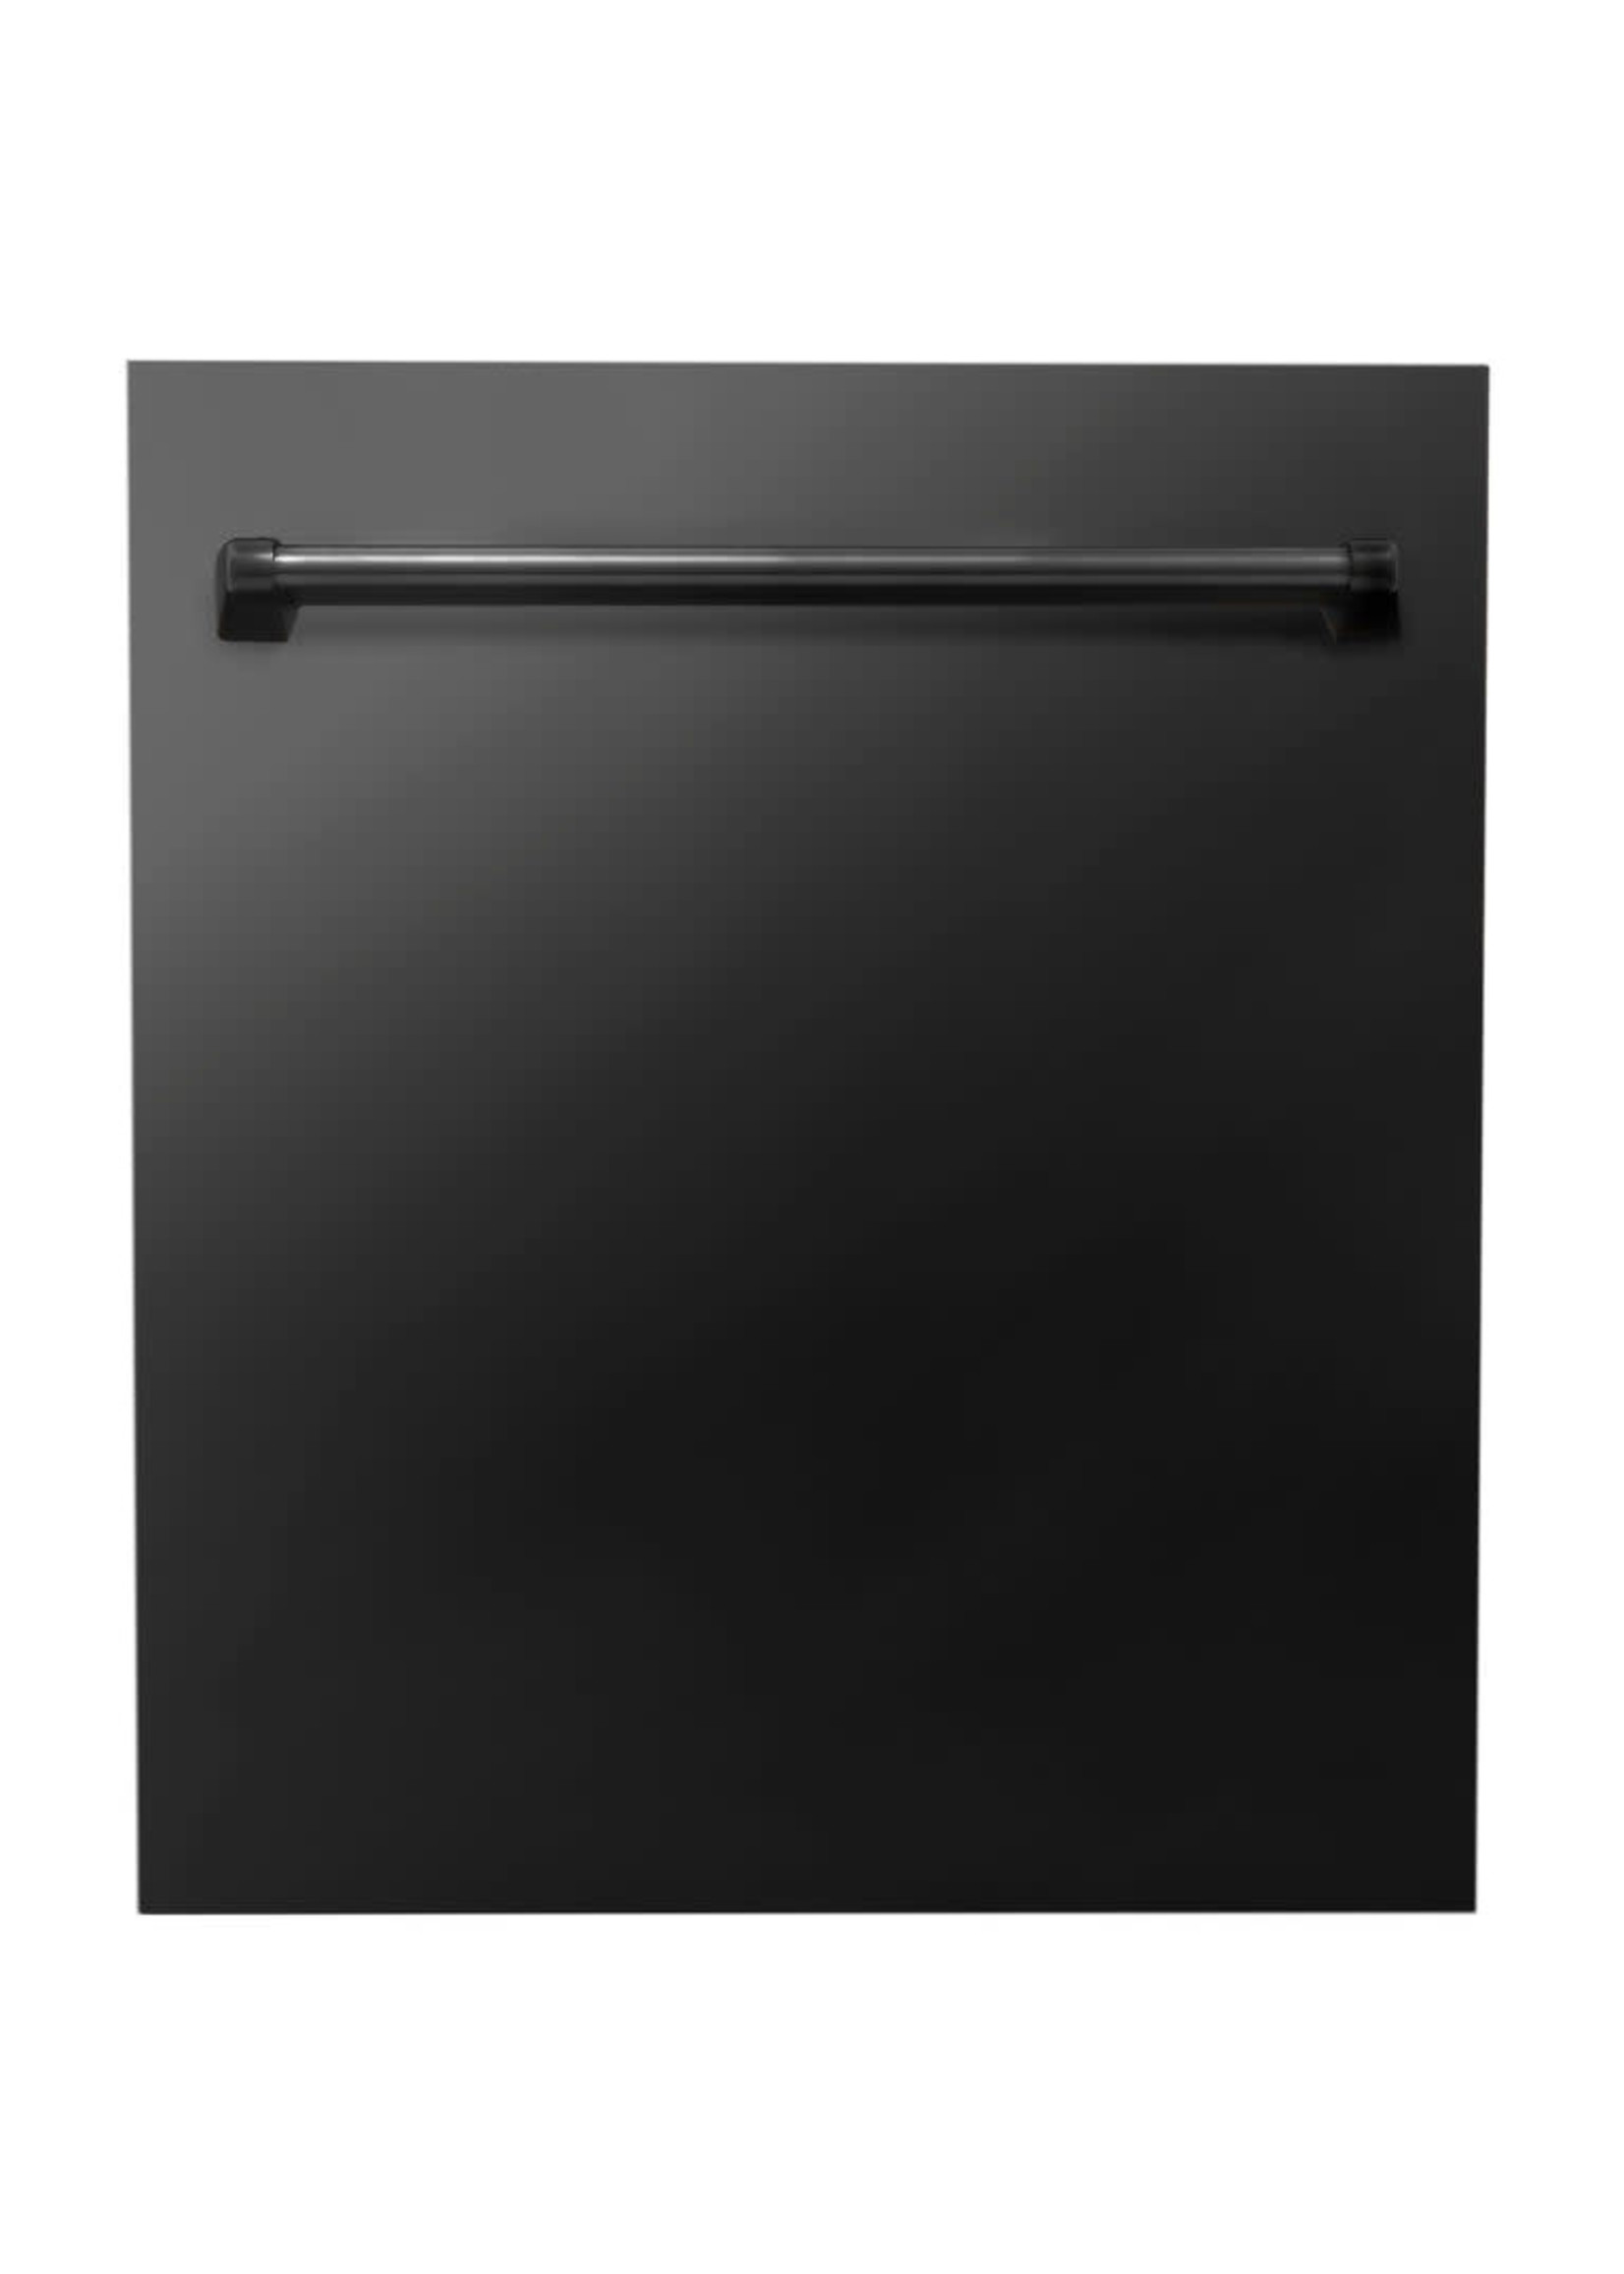 ZLINE ZLINE 24 in. Top Control Dishwasher in Black Stainless Steel, DW-BS-24